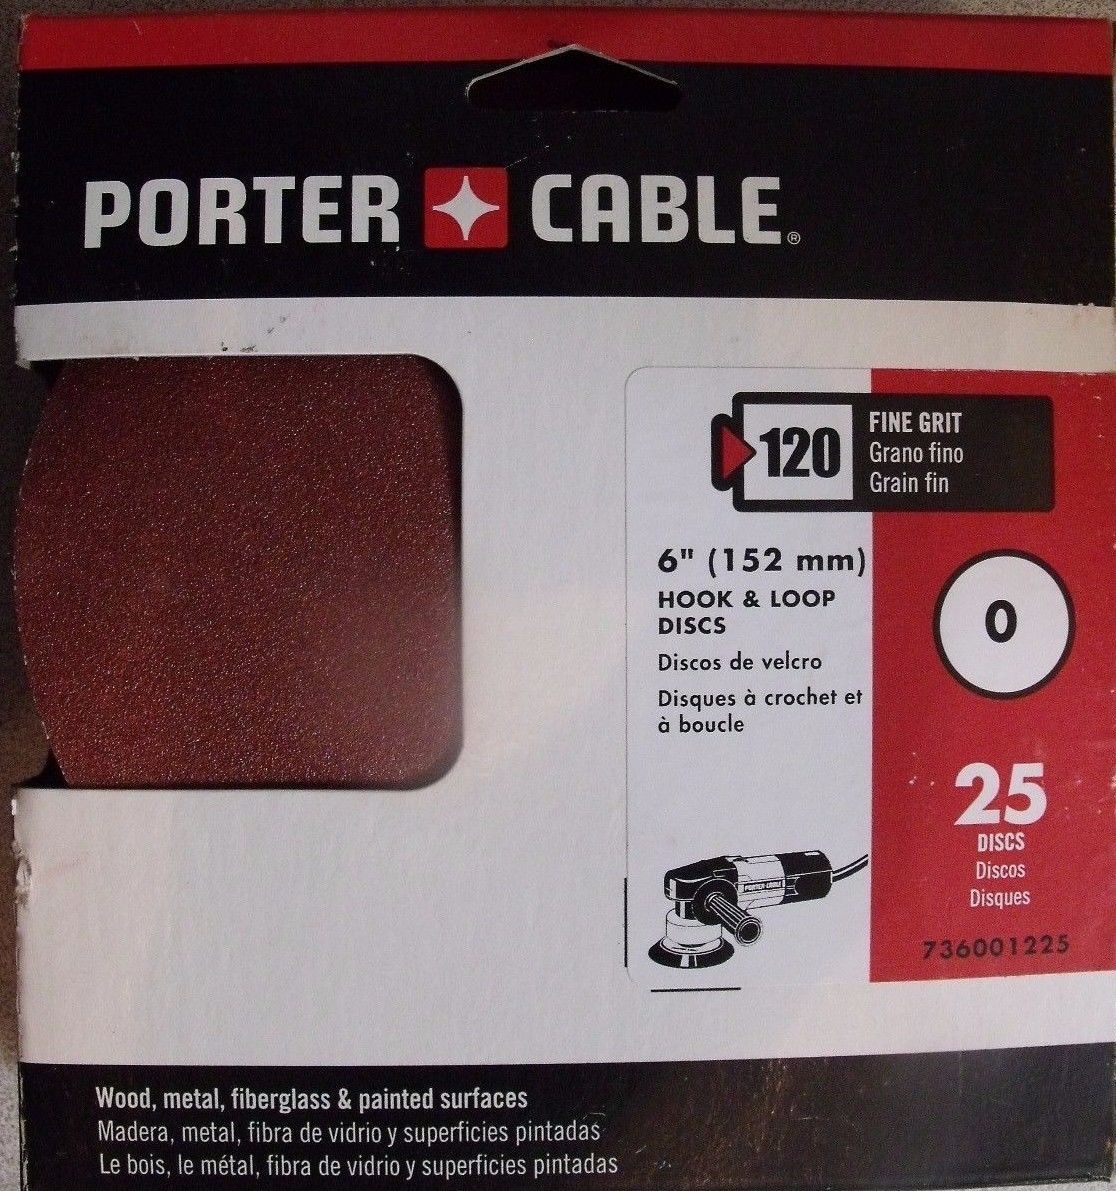 Porter Cable 736001225 6" H&L Aluminum Oxide 0 Hole 120G Disc 25pcs. Sandpaper